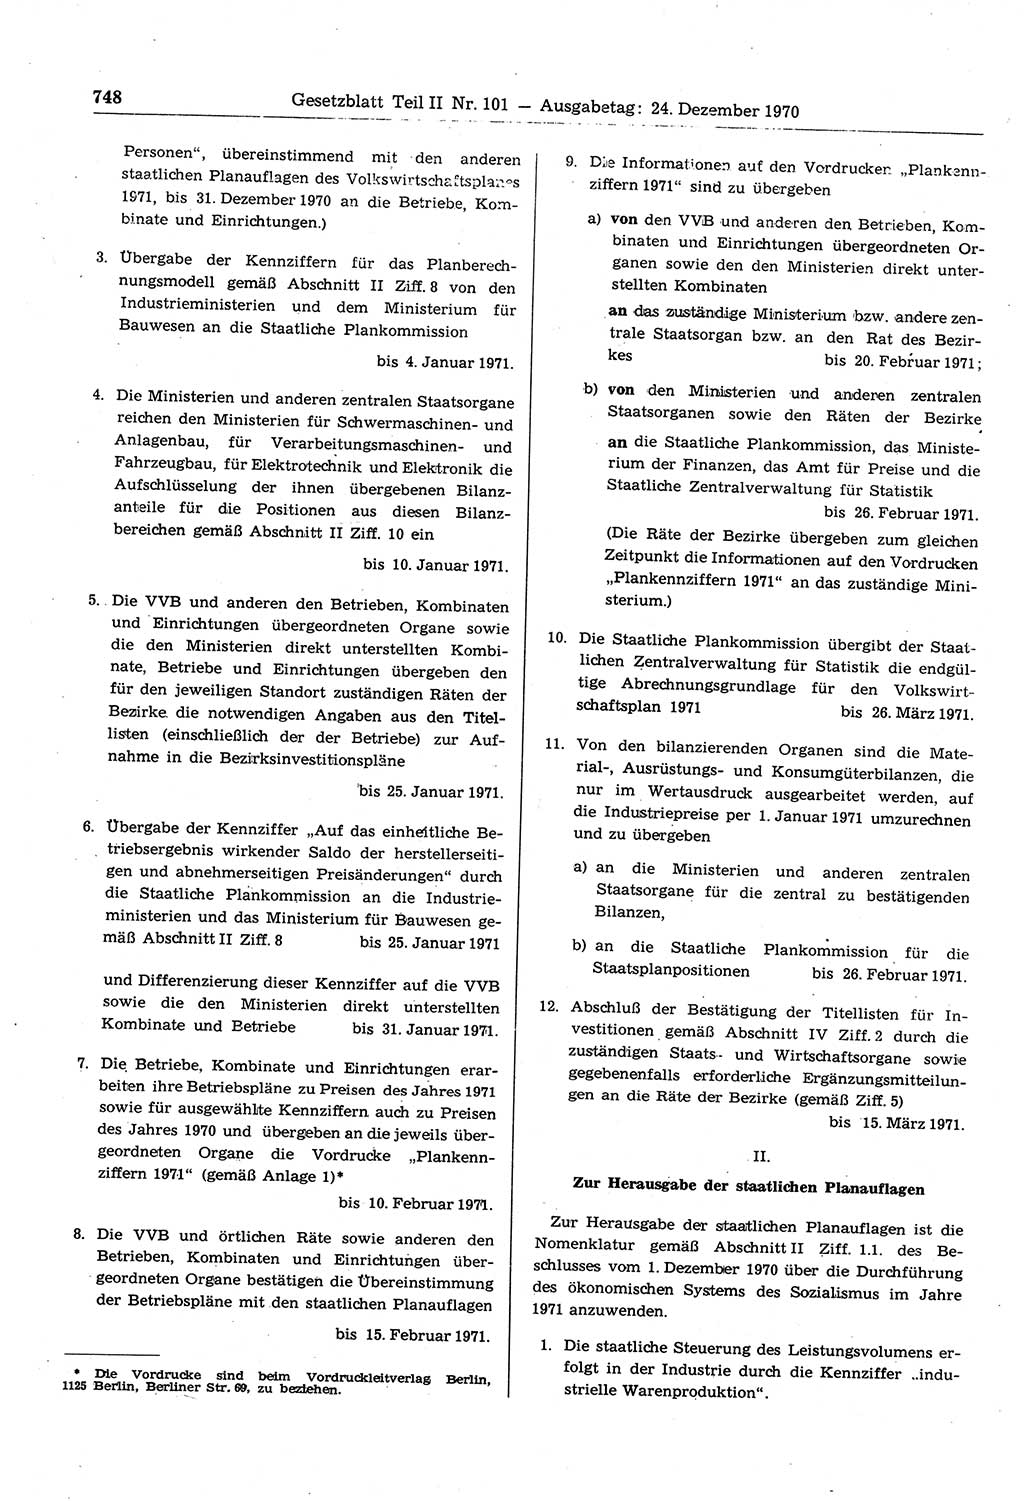 Gesetzblatt (GBl.) der Deutschen Demokratischen Republik (DDR) Teil ⅠⅠ 1970, Seite 748 (GBl. DDR ⅠⅠ 1970, S. 748)